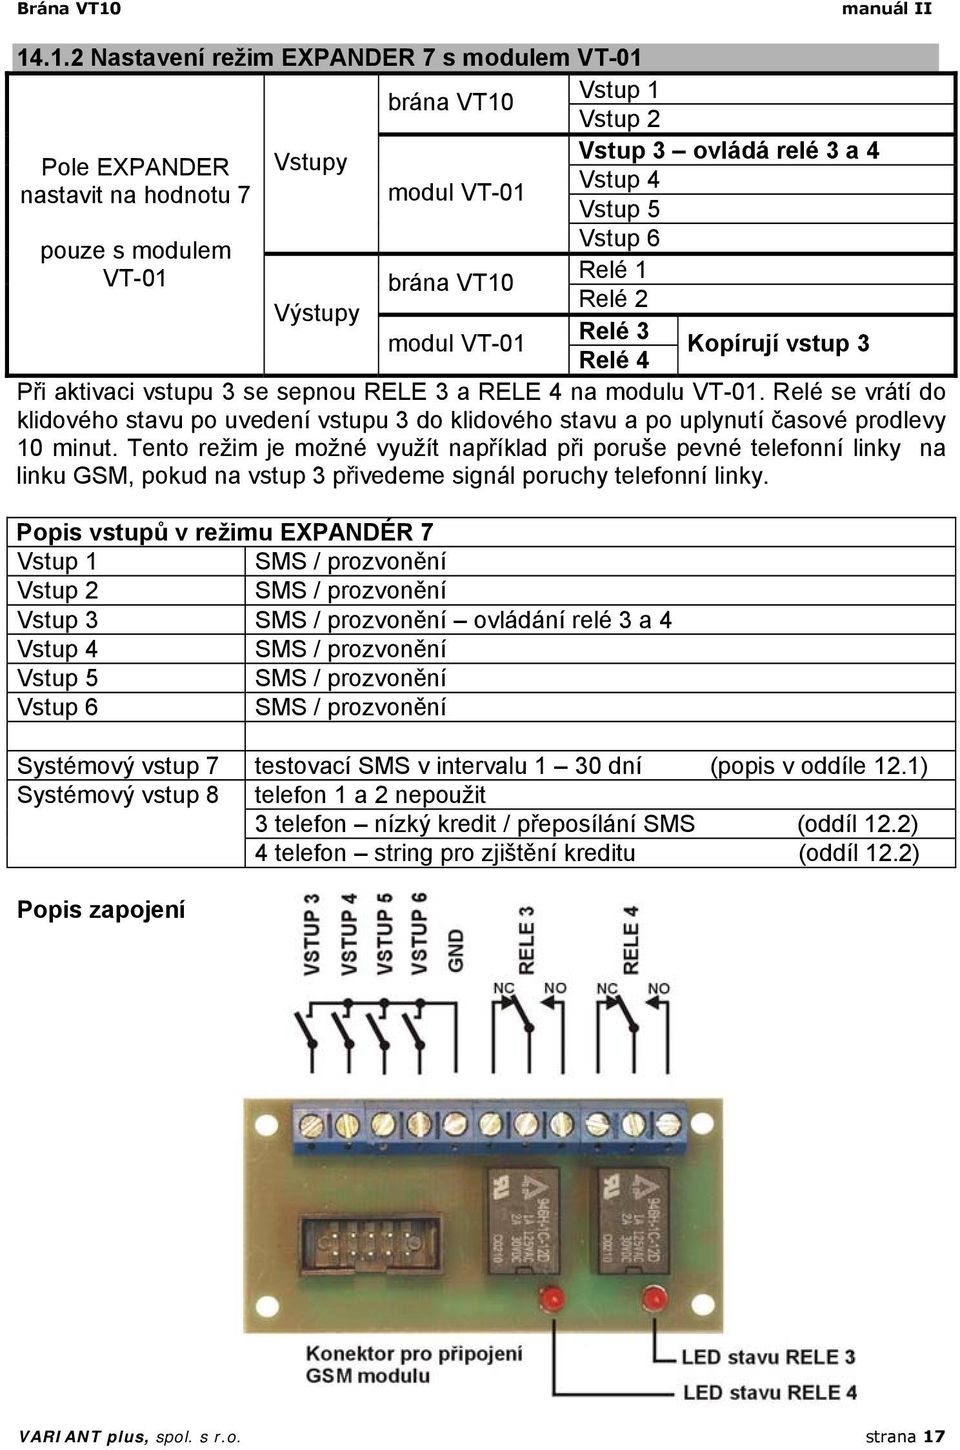 .1.2 Nastavení režim EXPANDER 7 s modulem VT-01 Vstup 1 brána VT10 Pole EXPANDER nastavit na hodnotu 7 Vstupy modul VT-01 Vstup 2 Vstup 3 ovládá relé 3 a 4 Vstup 4 Vstup 5 Vstup 6 pouze s modulem